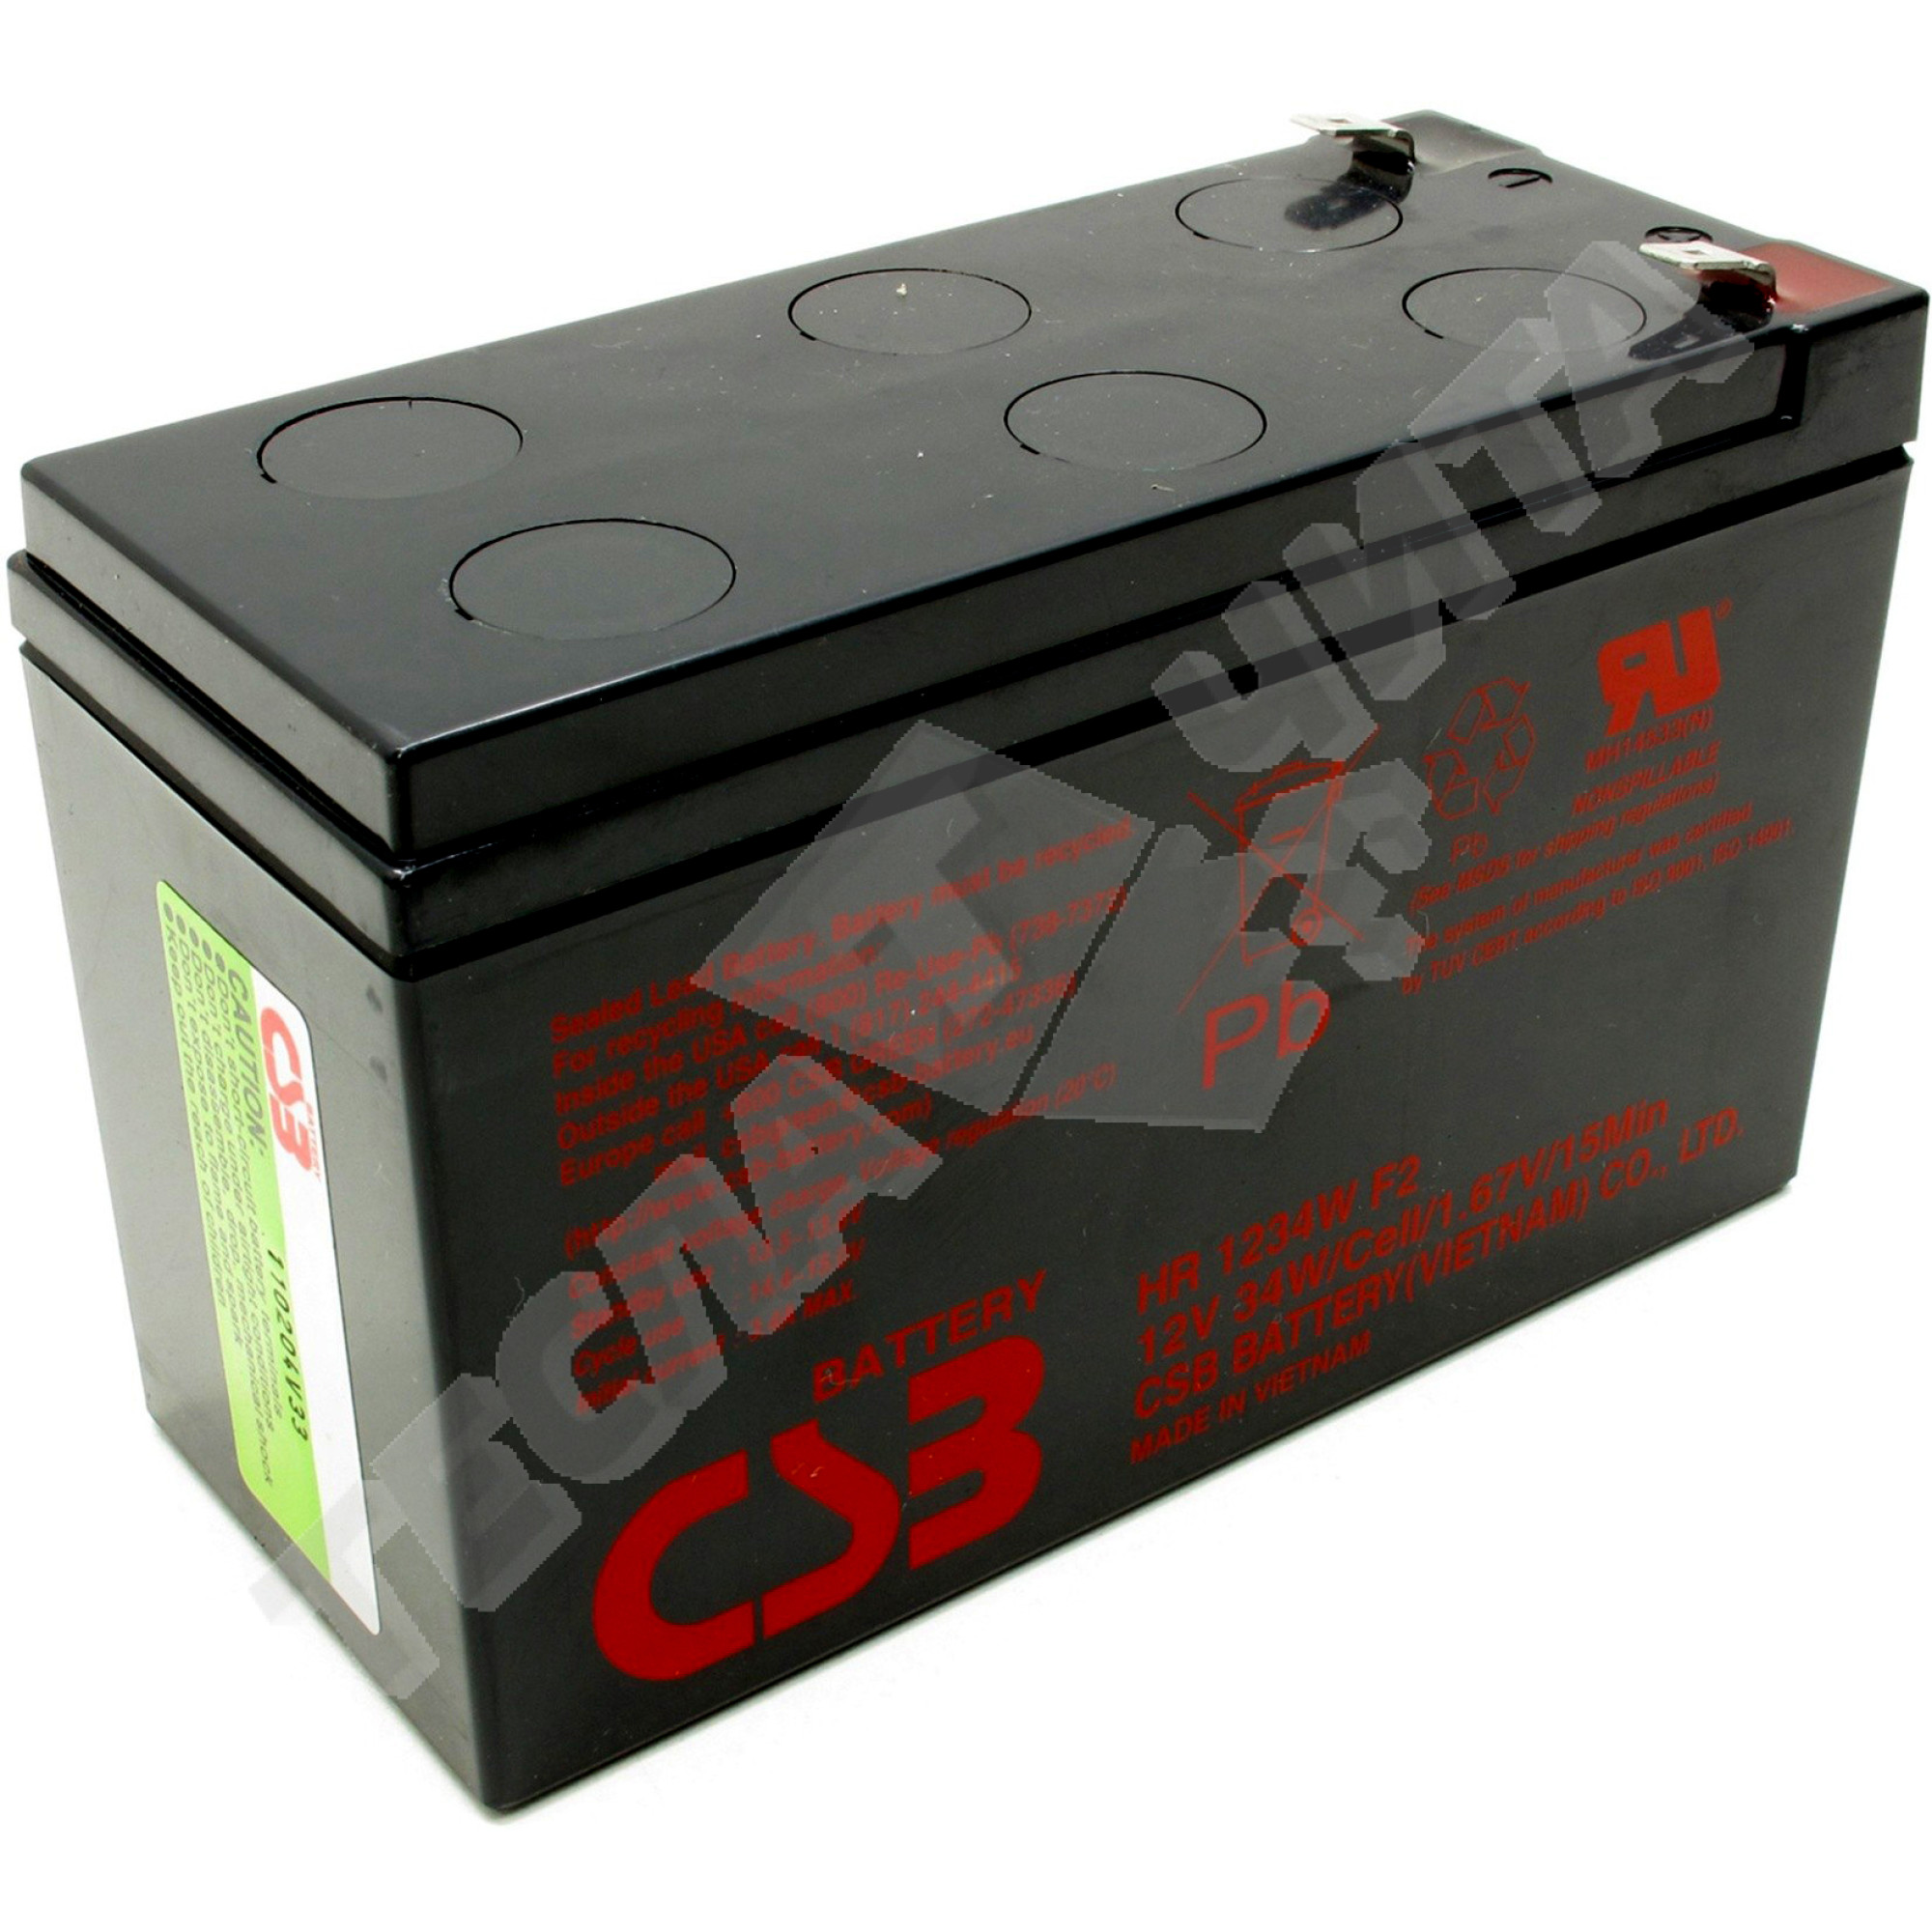 CSB HR 1234w f2. Батарея для ИБП CSB hr1234w f2 12 b/ 9 Aч, шт.. Аккумуляторная батарея HR 1234 W f2 34w/Cell/1.67v/15 min или его аналог. 12в/9 а*ч, CSB Battery hr1234w f2 или аналог. Аккумулятор csb hr1234w